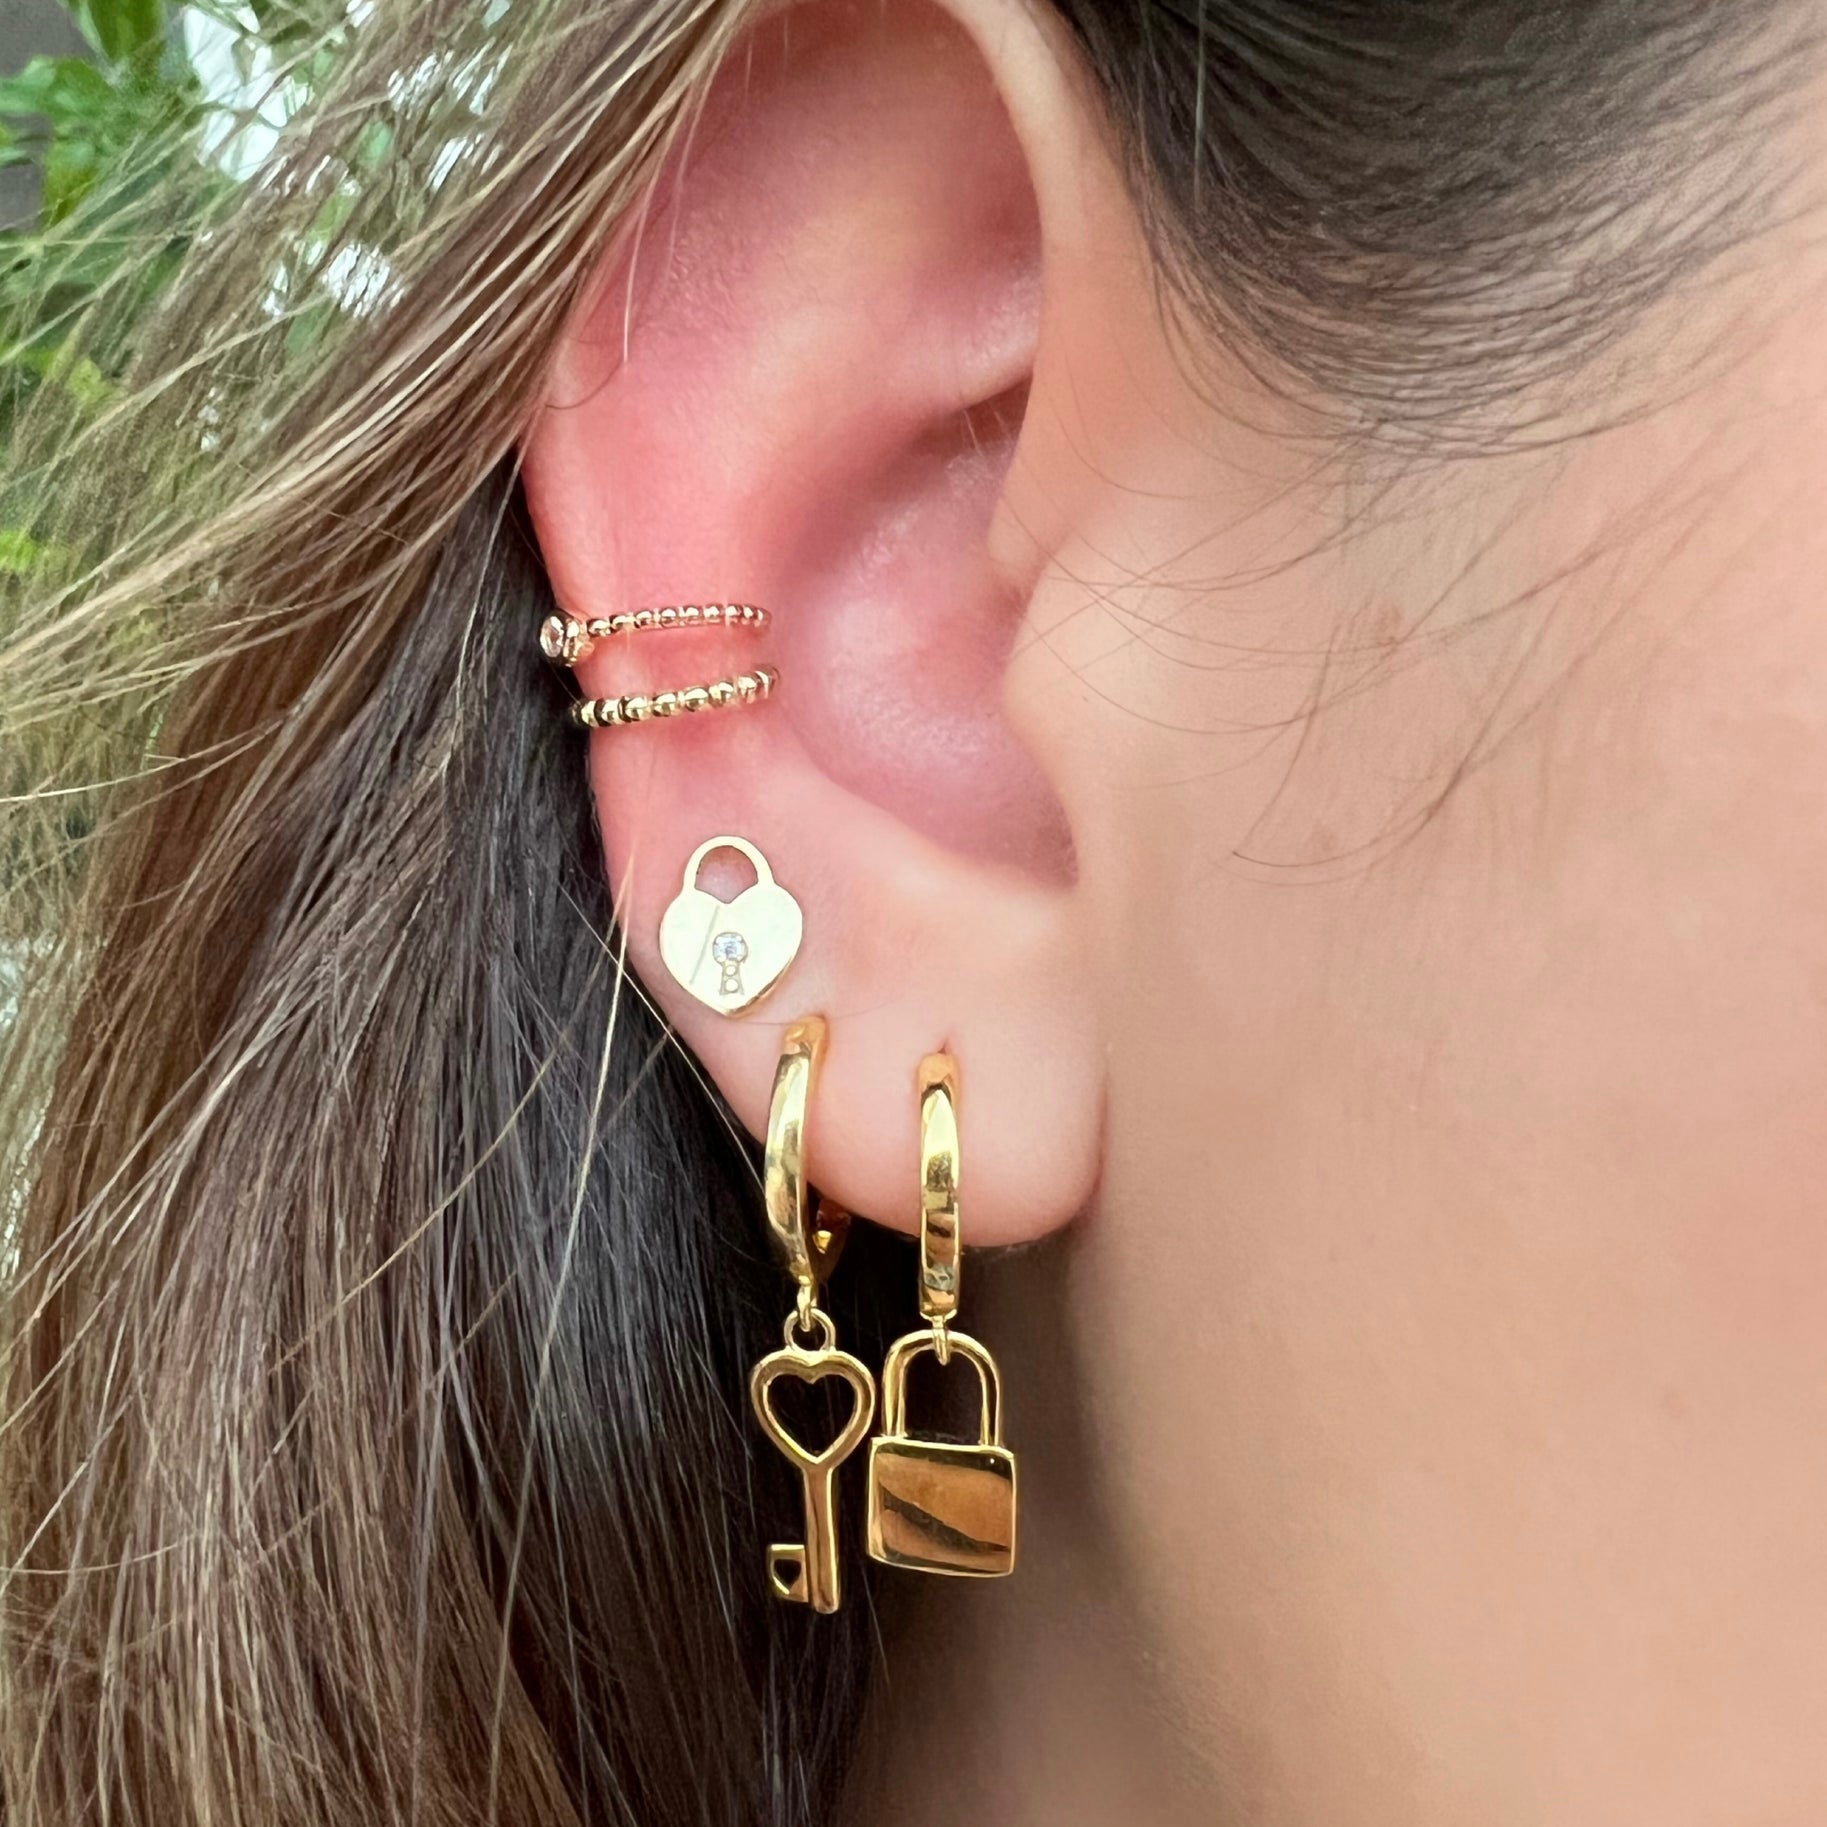 Solid Lock Huggies earrings